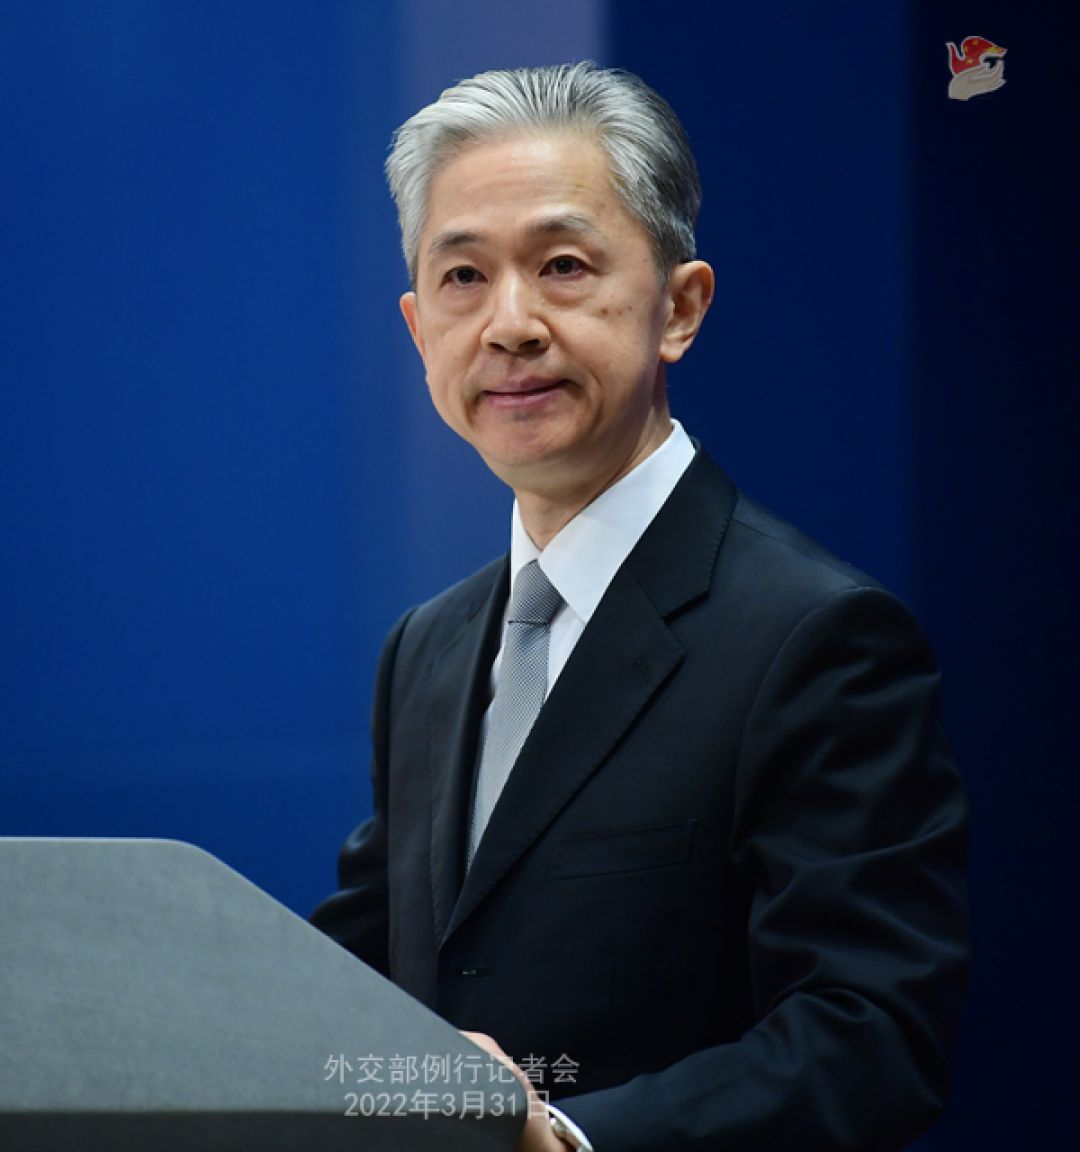 Konferensi Pers Kementerian Luar Negeri China 31 Maret 2022-Image-3